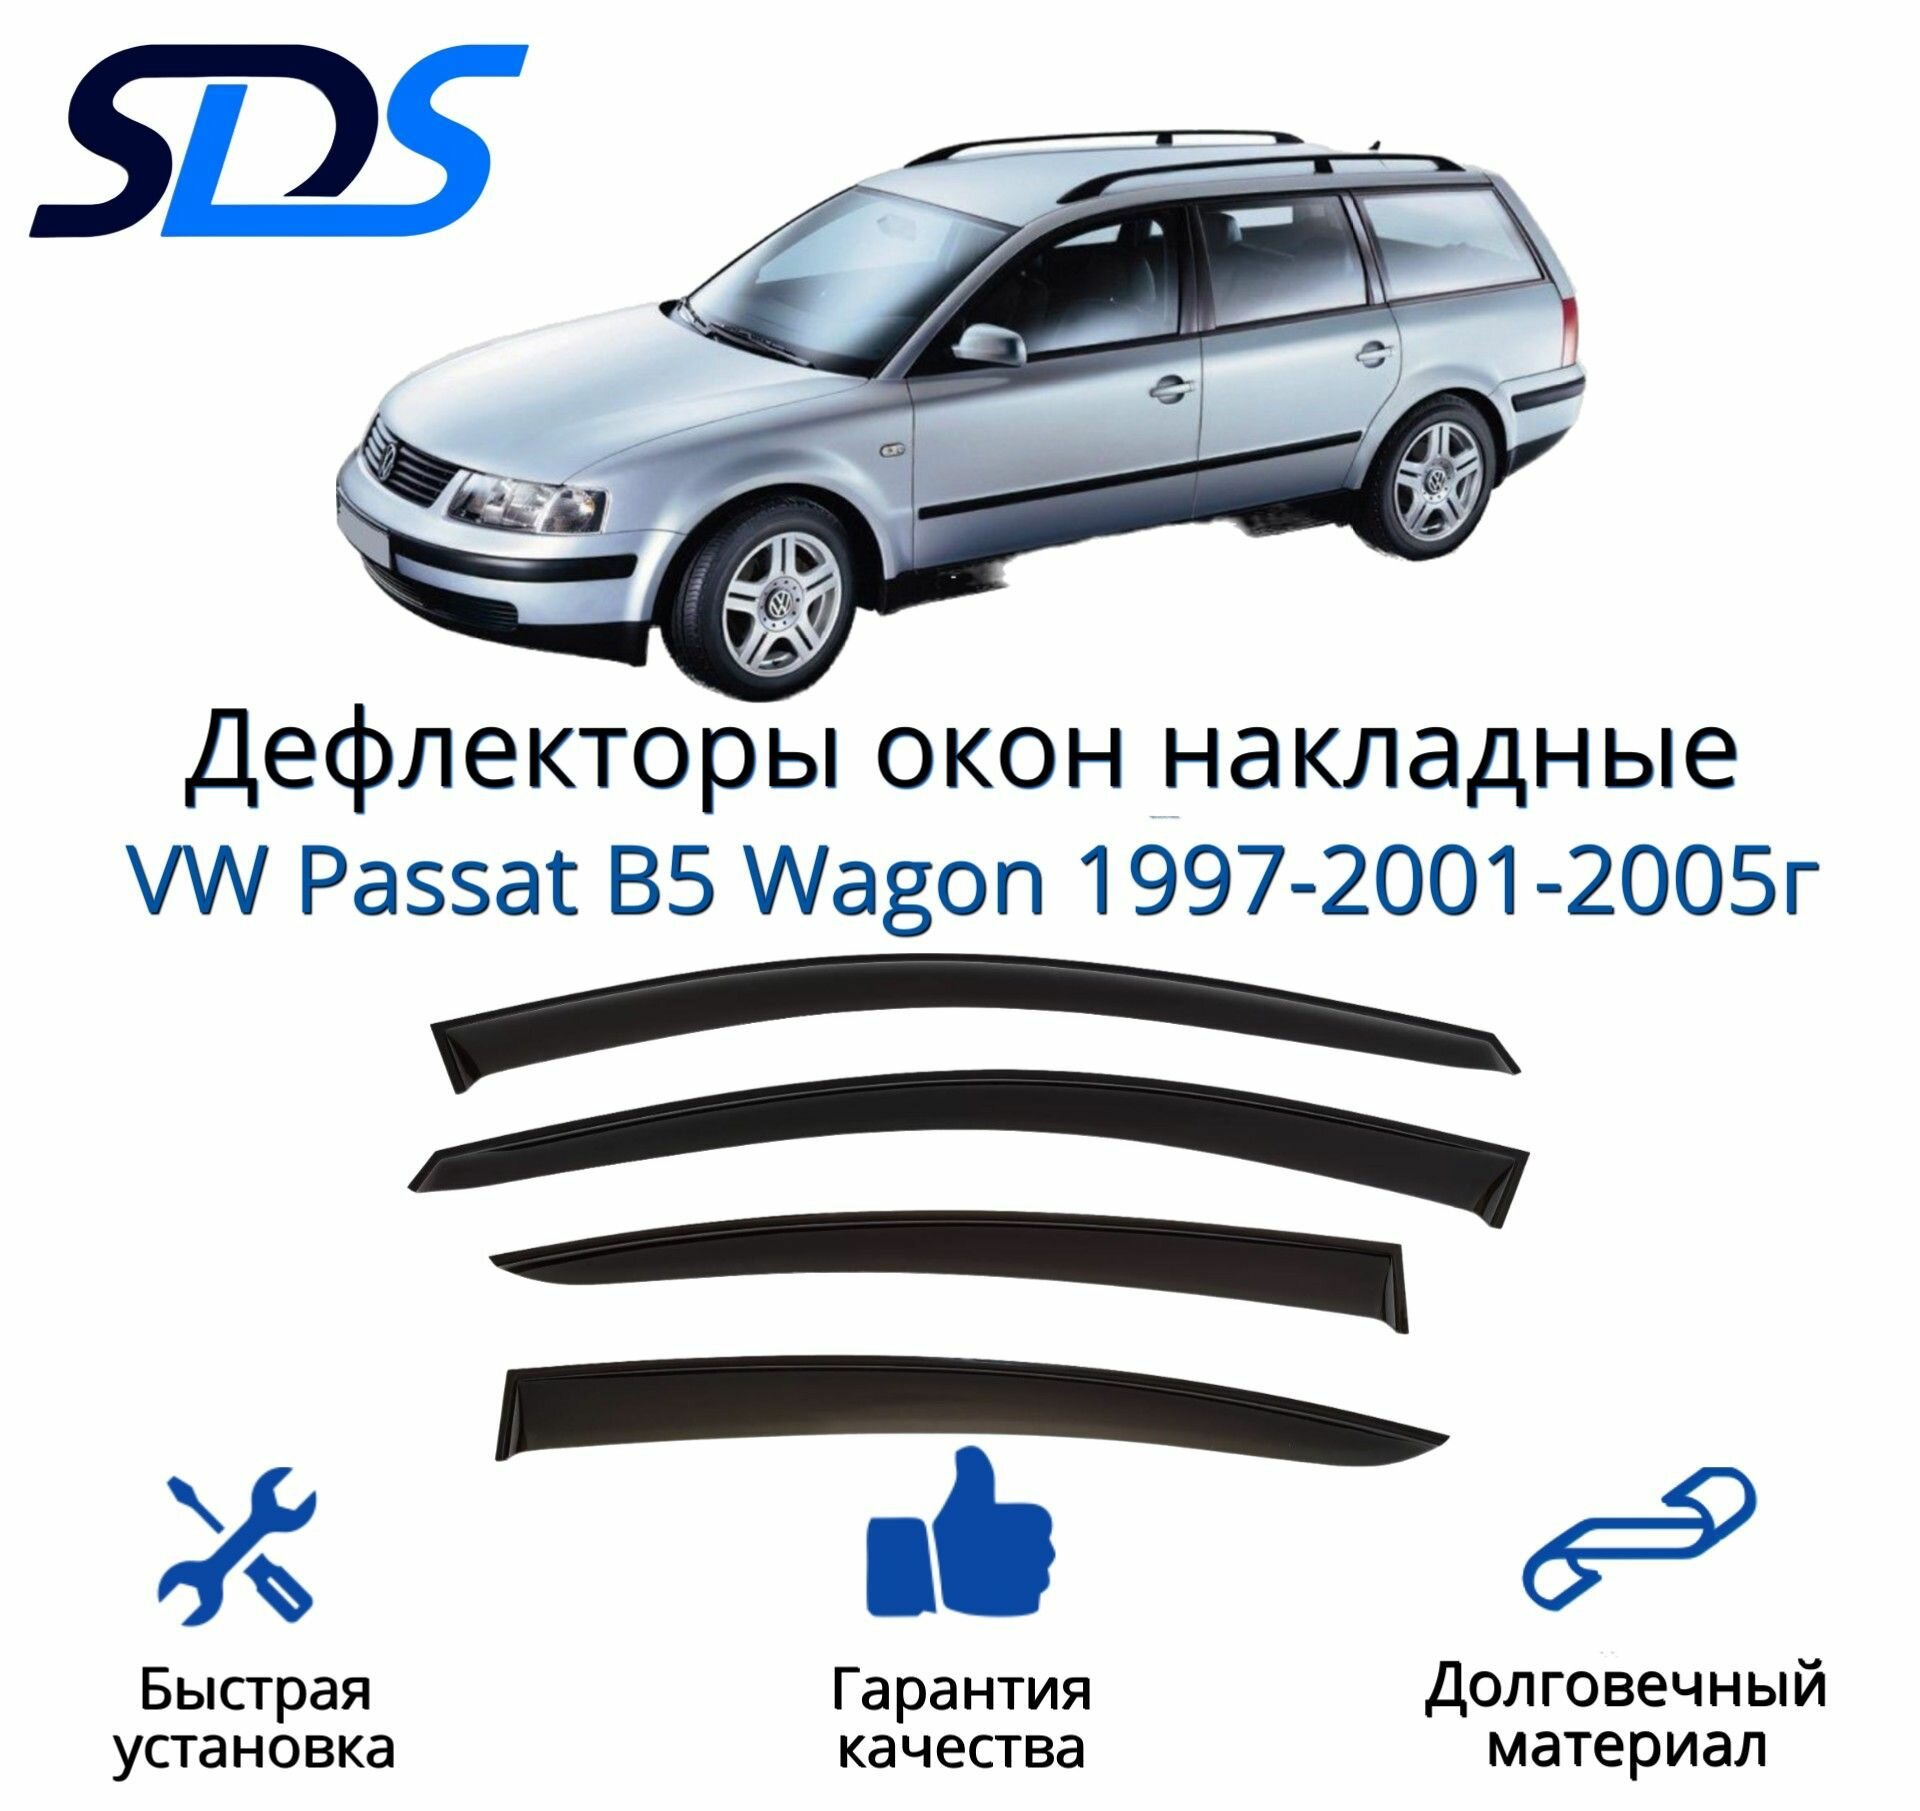 Дефлекторы окон (ветровики) для VW Passat B5 Wagon 1997-2001-2005г.